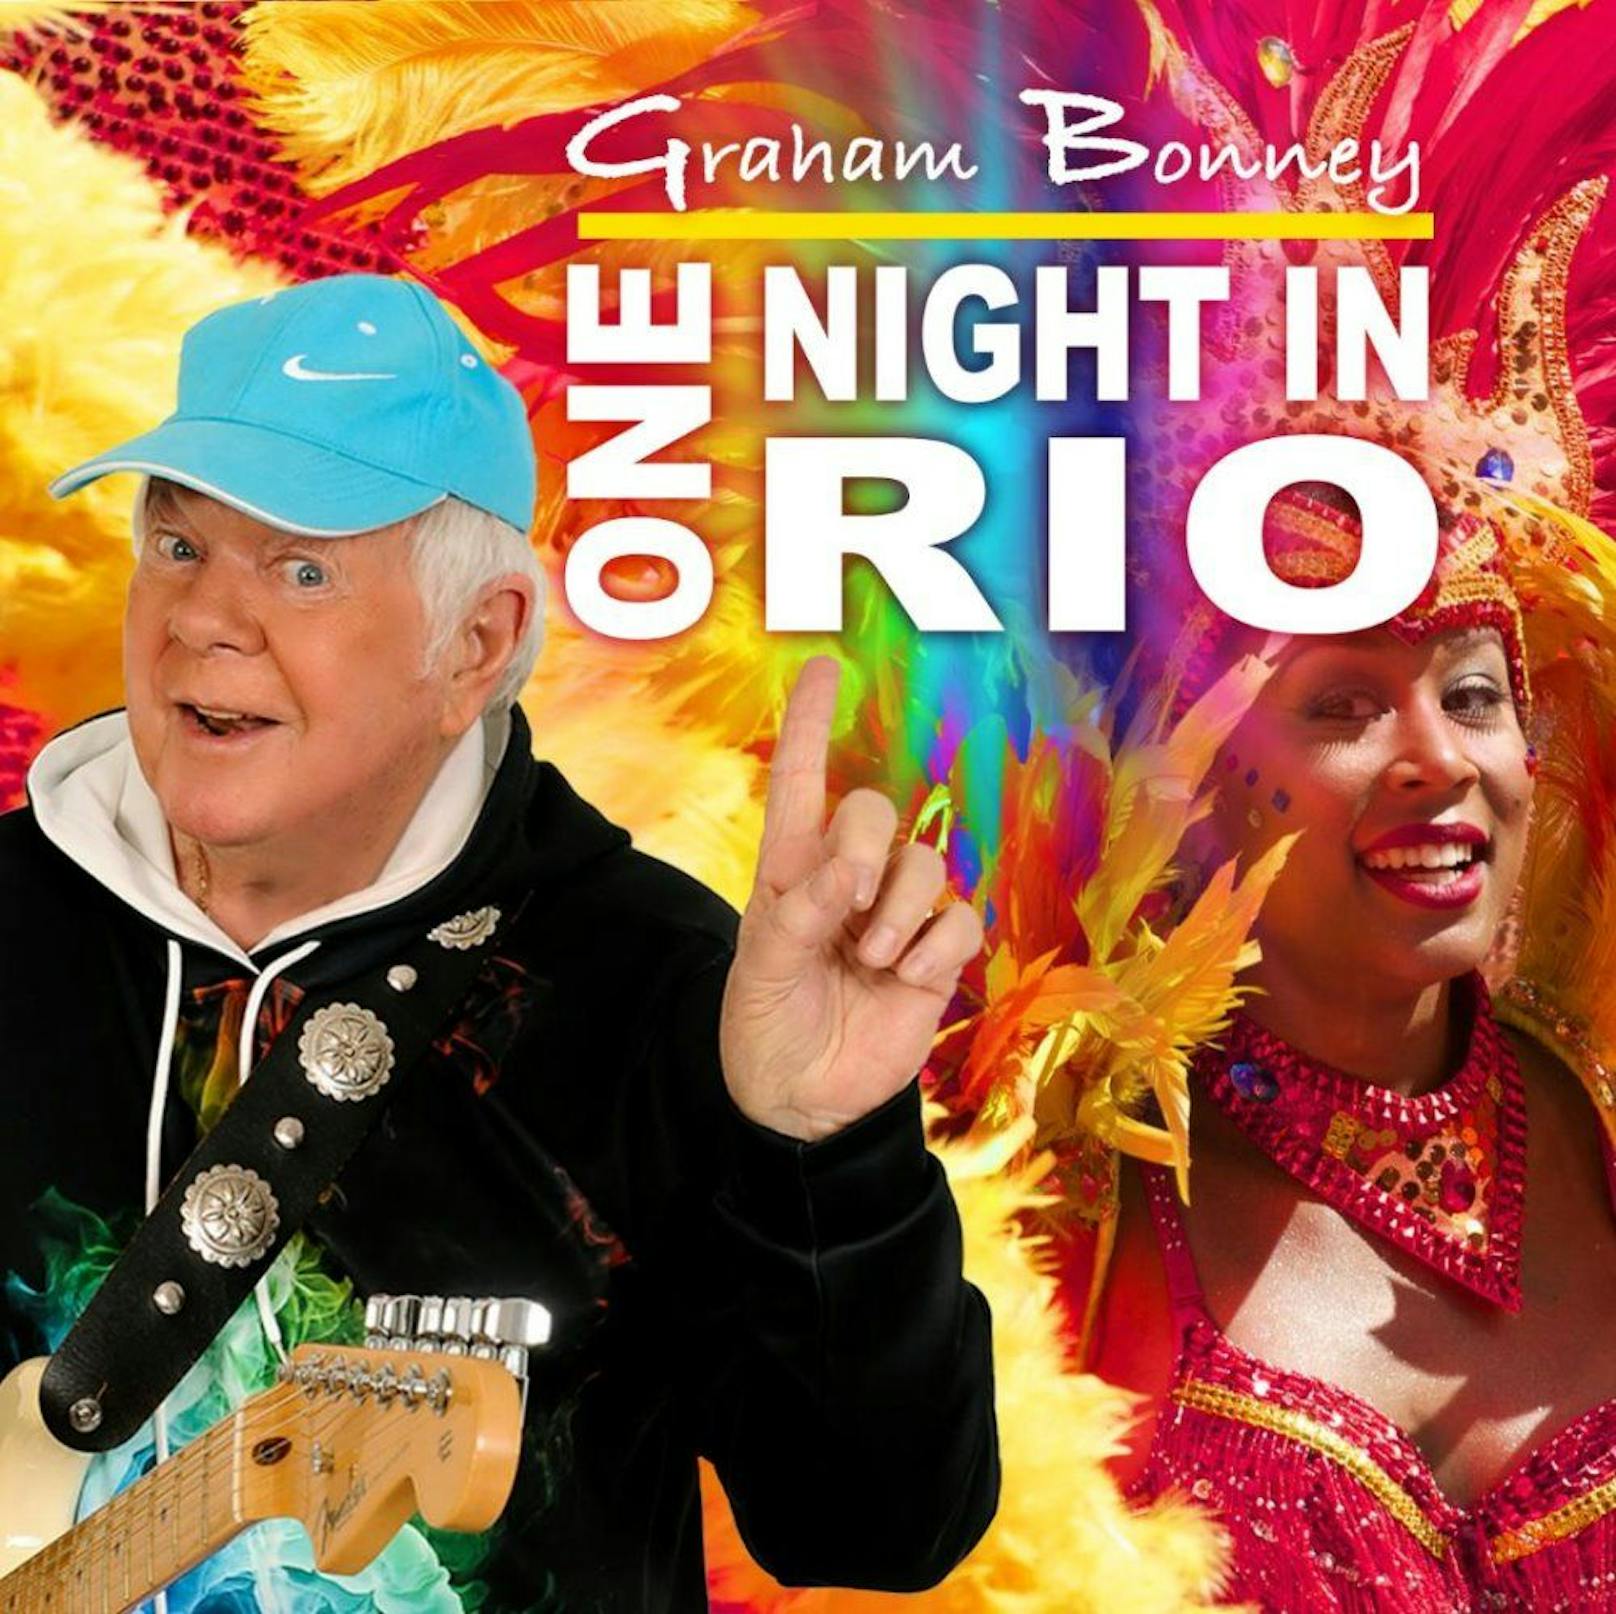 <strong>Graham Bonney "One Night in Rio"</strong>:&nbsp;Rockig, fetzig und südamerikanisch - die Schlagerlegende will es mit diesem Sommer-Hit noch einmal wissen.&nbsp;Flamenco-Samba-Sound, der nicht nur die Beine zum tanzen bringt. Wir wählen ausnahmsweise mal nicht 3-3-3, sondern R-I-O. Ay Caramba! <a href="https://www.youtube.com/watch?v=AhUDUo9K8Gg">HIER geht's zum Song &gt;&gt;</a>